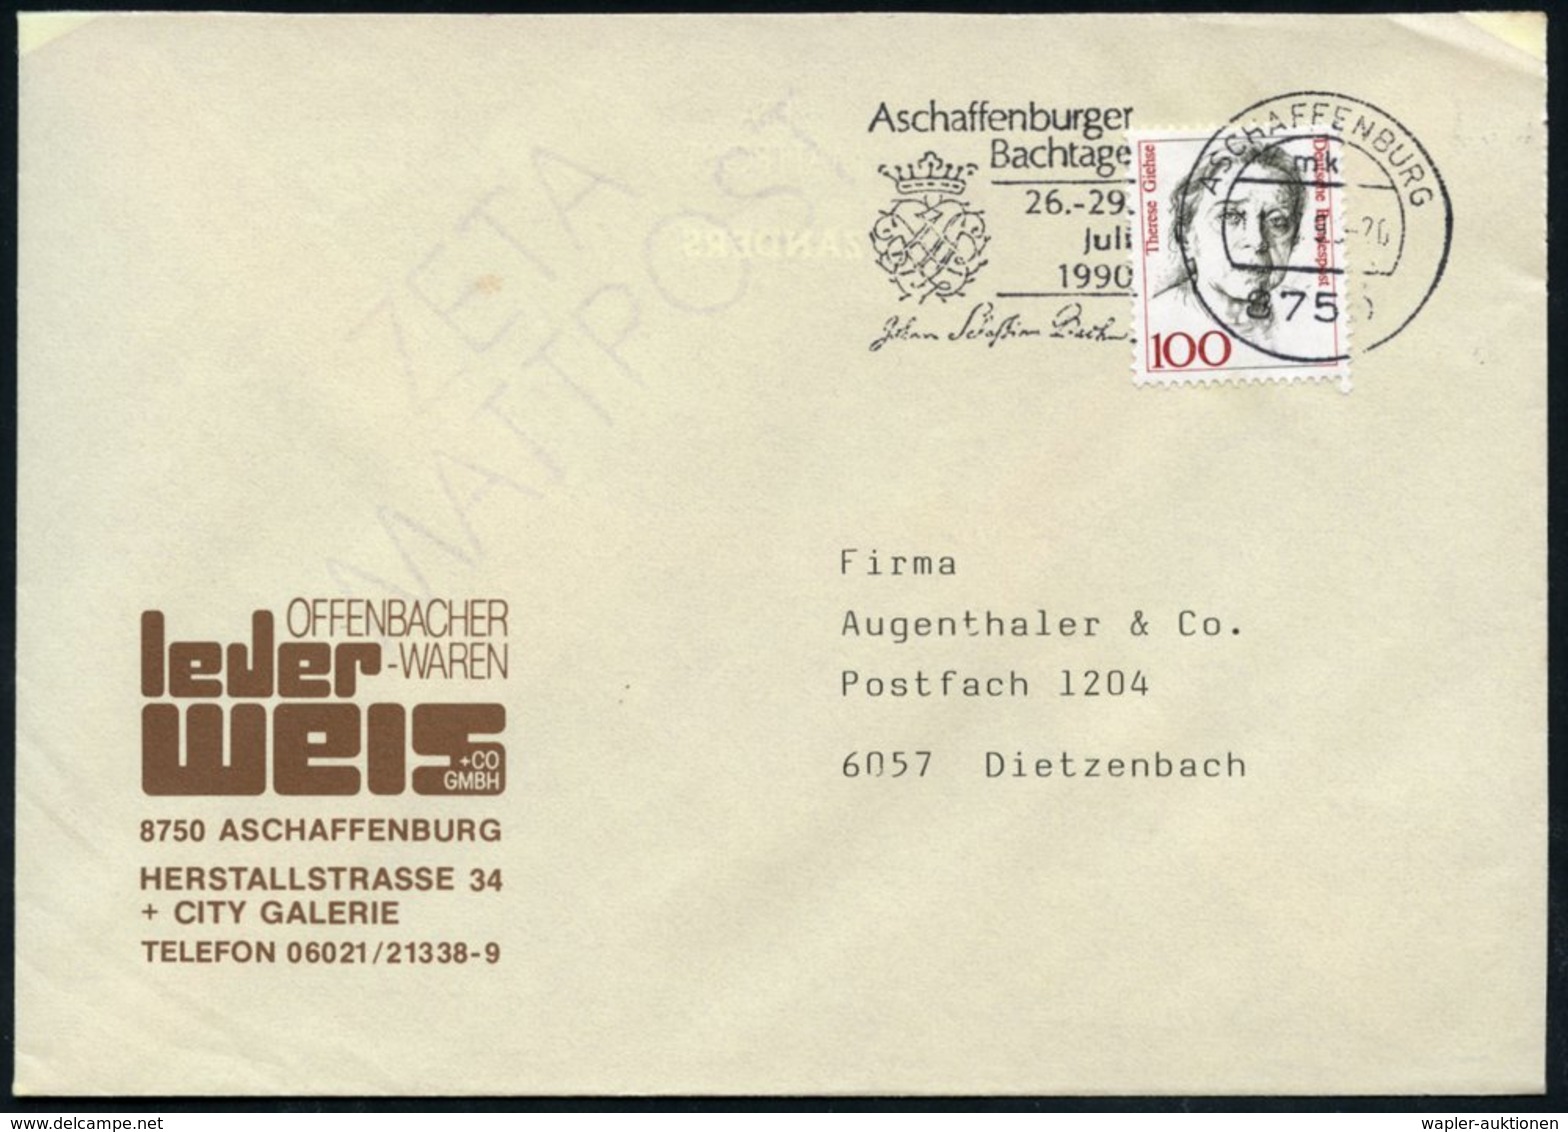 1990 8750 ASCHAFFENBURG 1, Maschinen-Werbestempel: Aschaffenburger Bachtage, 26.-29. Juli (Bach-Monogramm) Firmenbrief - - Other & Unclassified